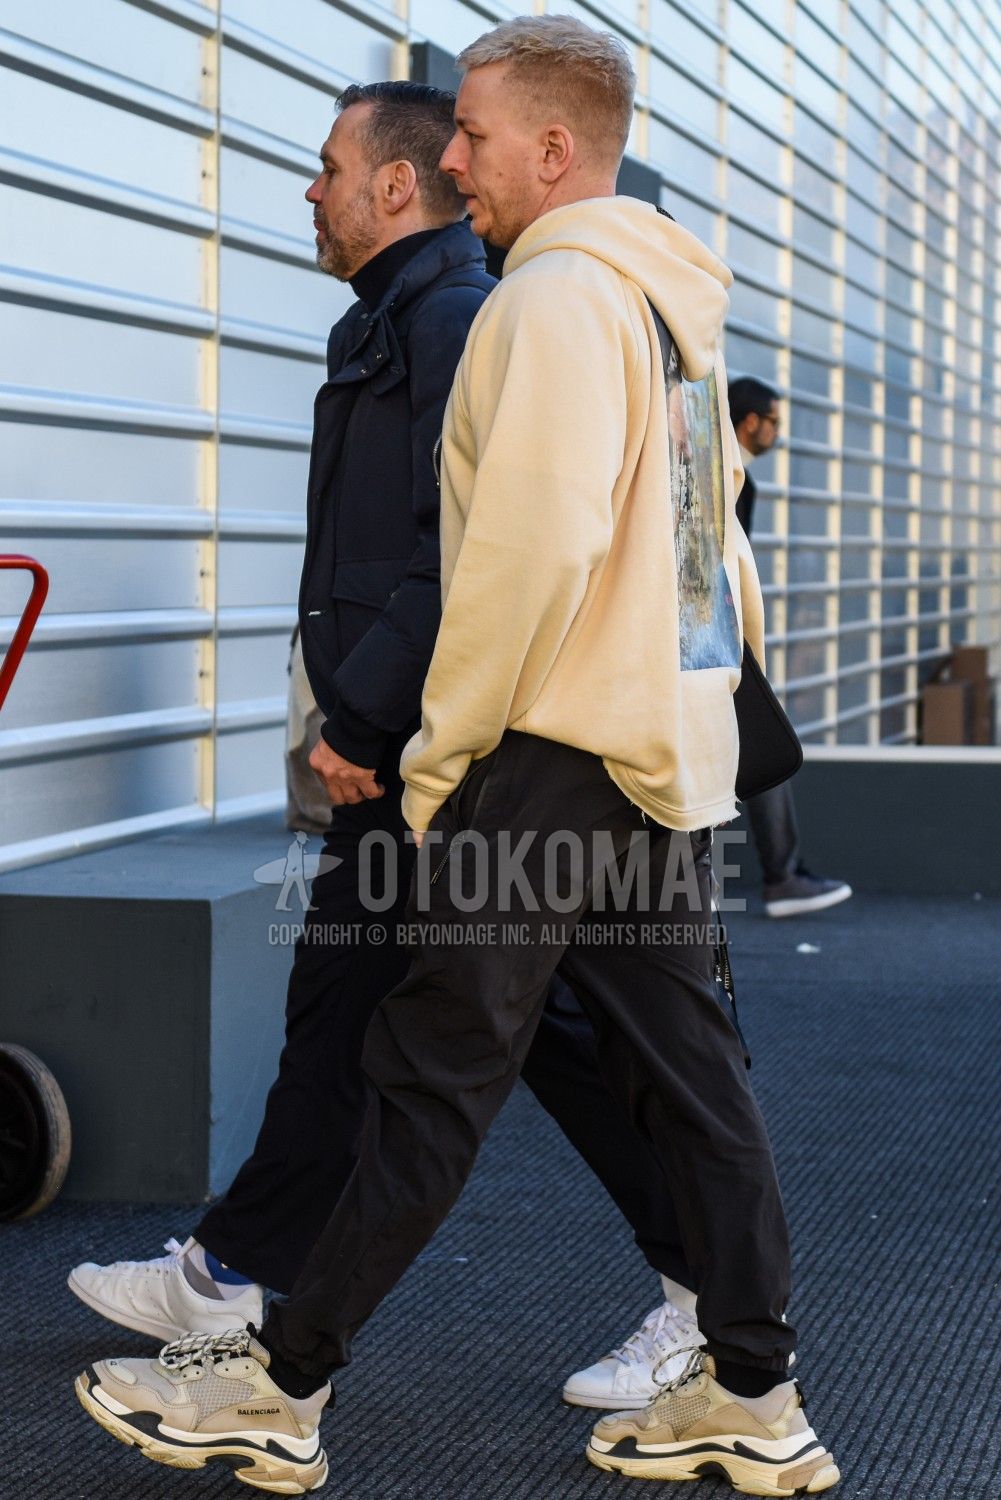 ジョガーパンツでメンズコーデの足元を軽快にこなす メンズファッションメディア Otokomae ページ 6otokomae 男前研究所 ページ 6